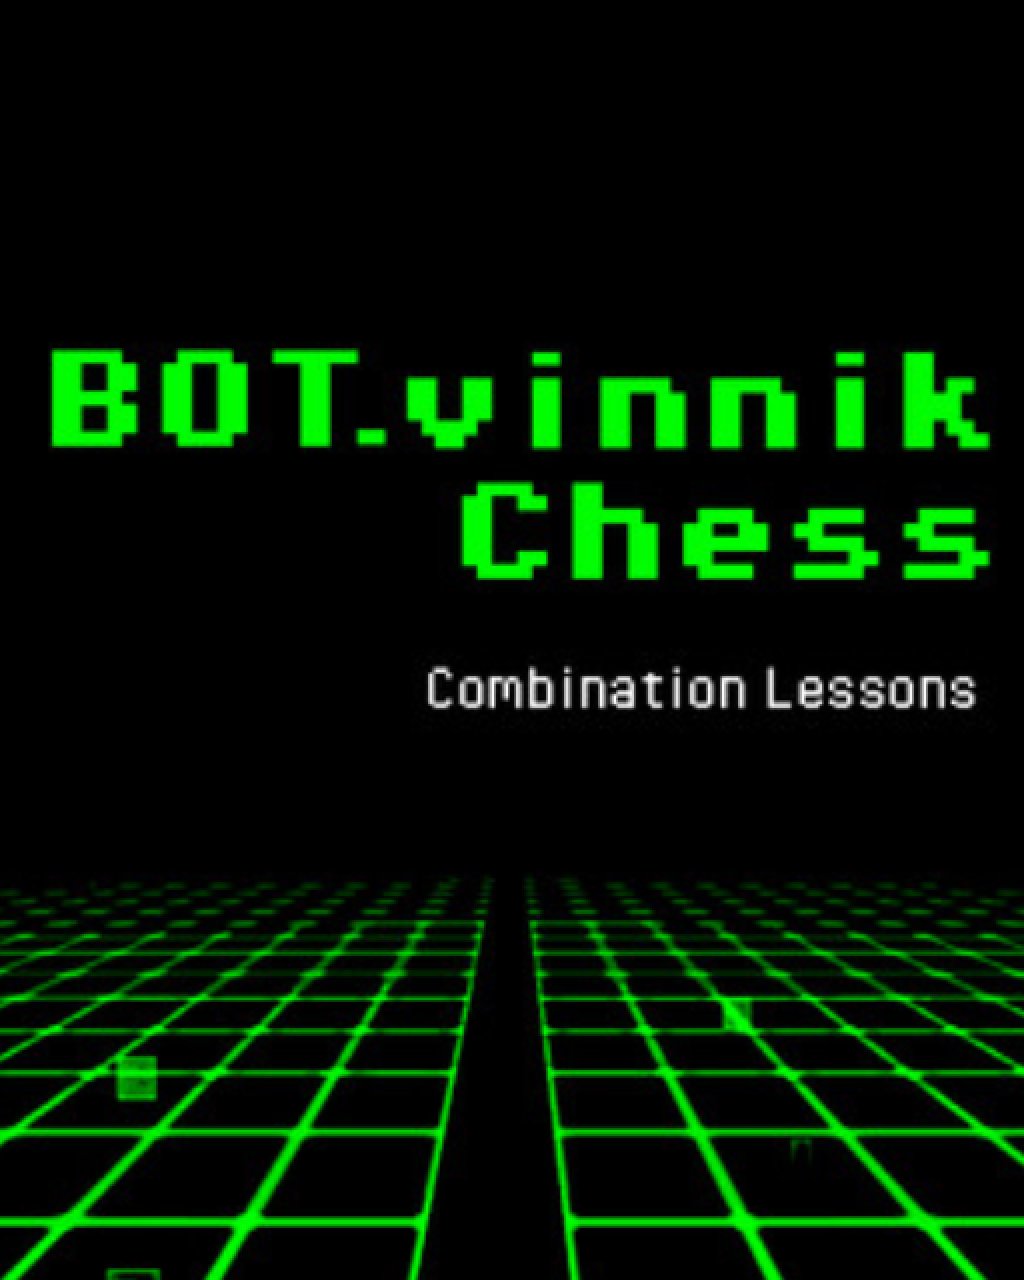 BOT.vinnik Chess Combination Lessons